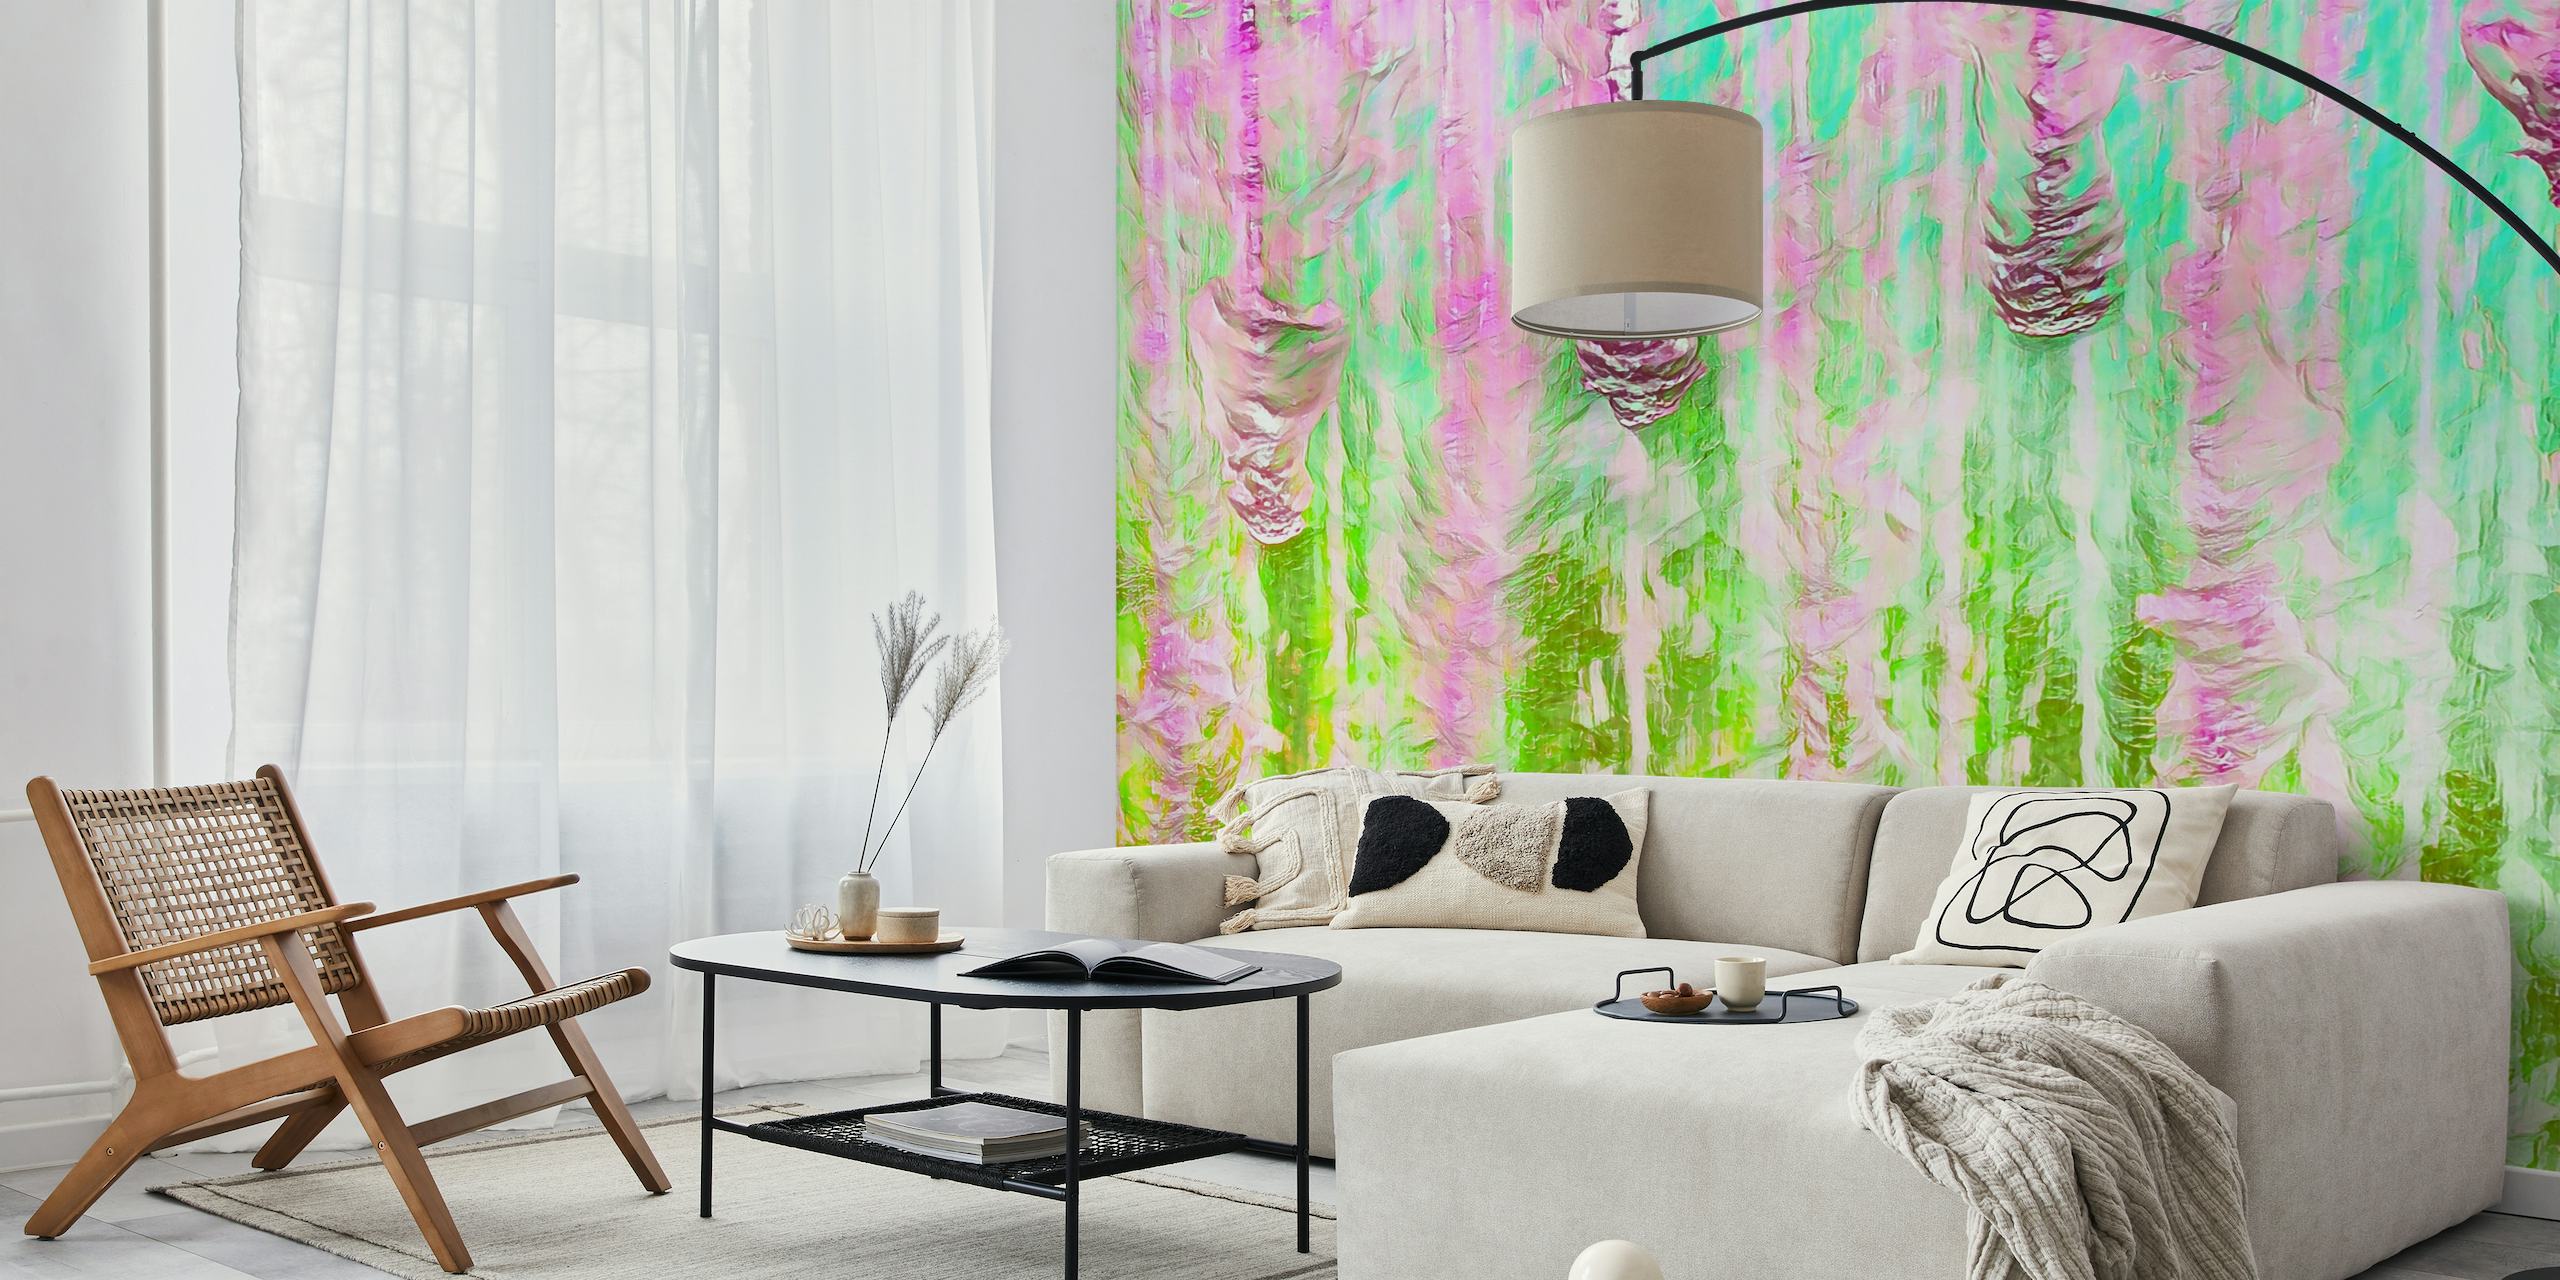 Colorido mural abstracto Happy Liquid Paint Flow con rosas y verdes vibrantes, que crean un efecto de acuarela fluida.